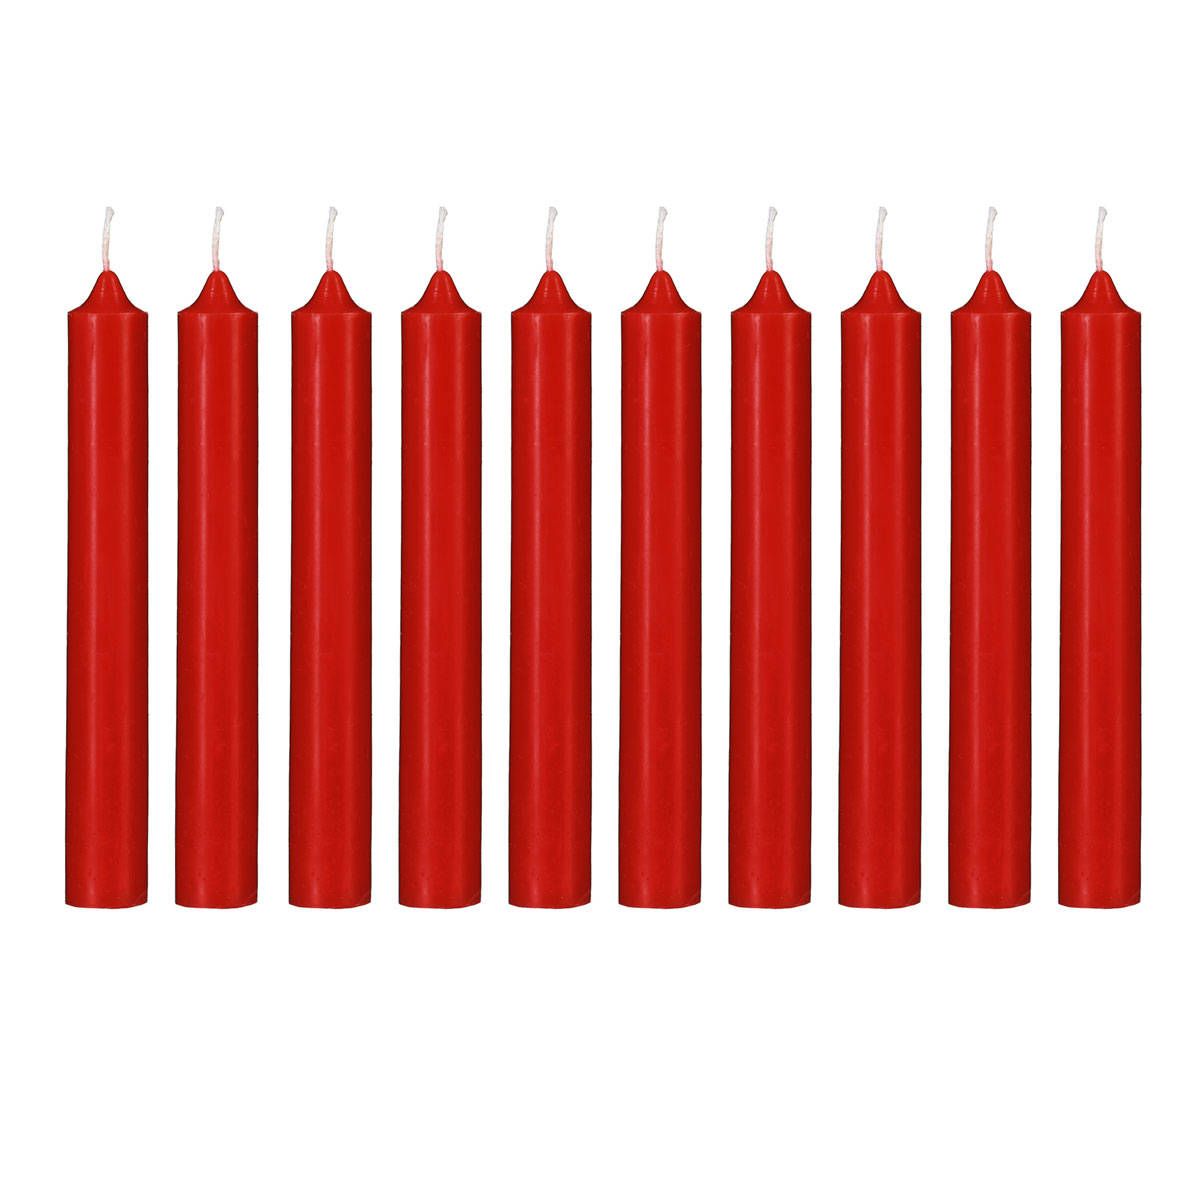 Atmosphera Úzké svíčky, červené, sada 10 ks - EMAKO.CZ s.r.o.